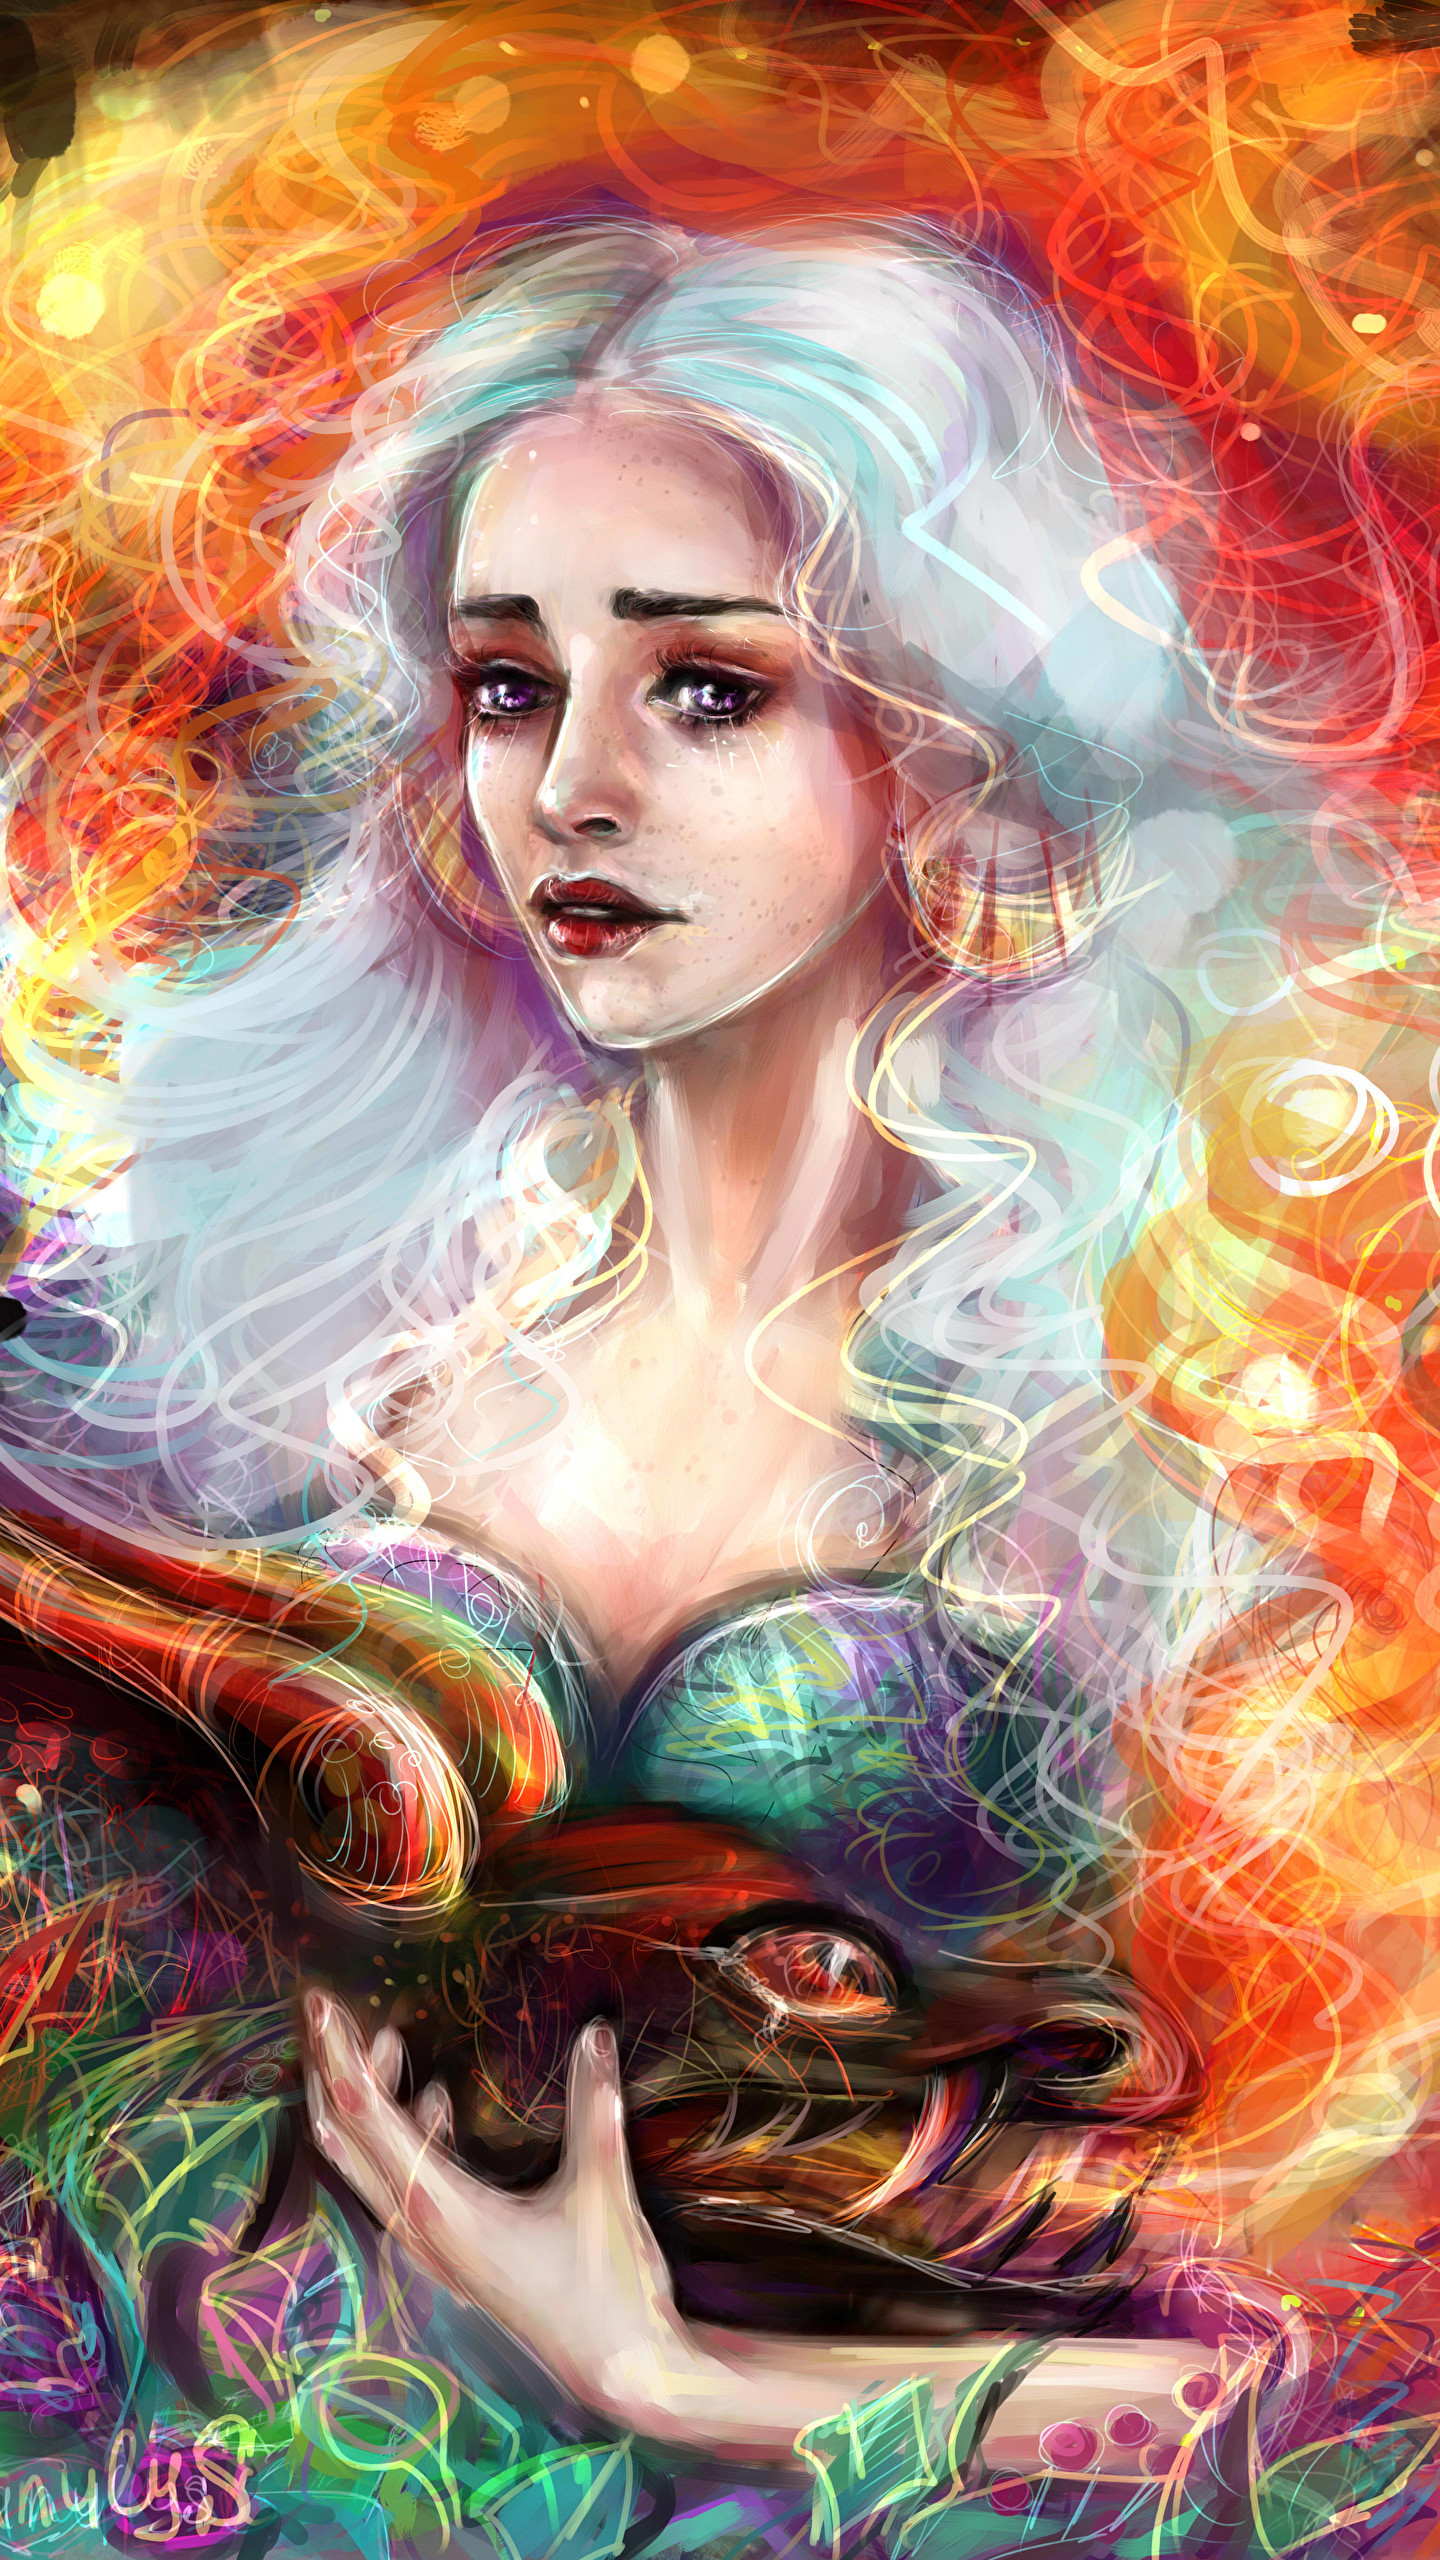 emilia clarke fondo de pantalla de juego de tronos,cg artwork,ilustración,arte,personaje de ficción,mitología